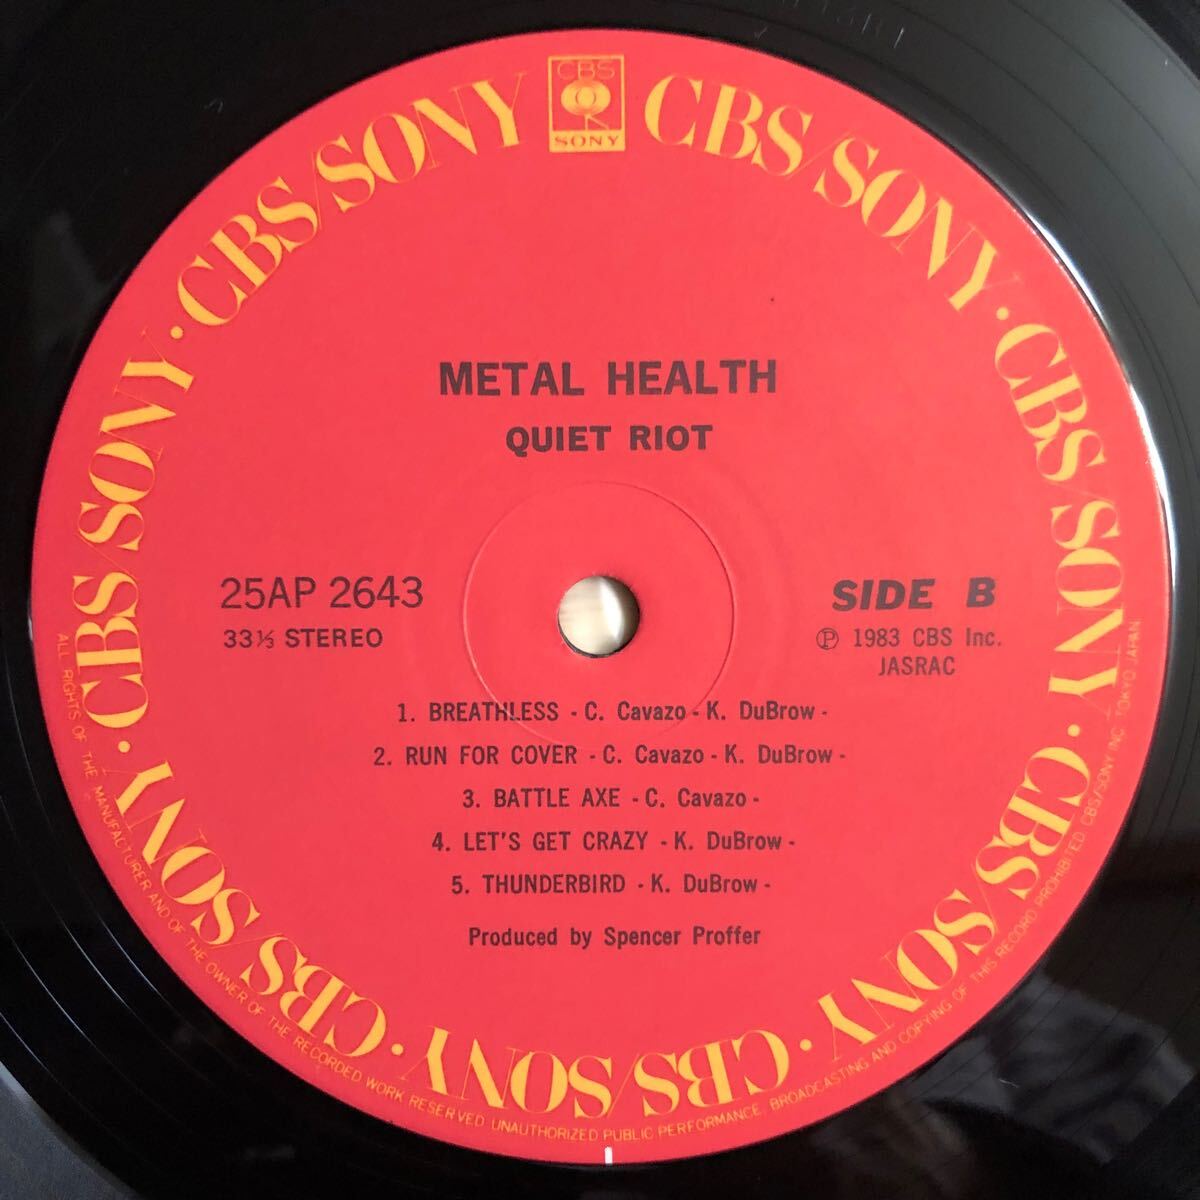 LP QUIET RIOT クワイエット・ライオット/METAL HEALTH メタル・ヘルス ランディ・ローズに捧ぐ[国内盤:1983年3作目]HARD ROCK HEAVY METAL_画像4